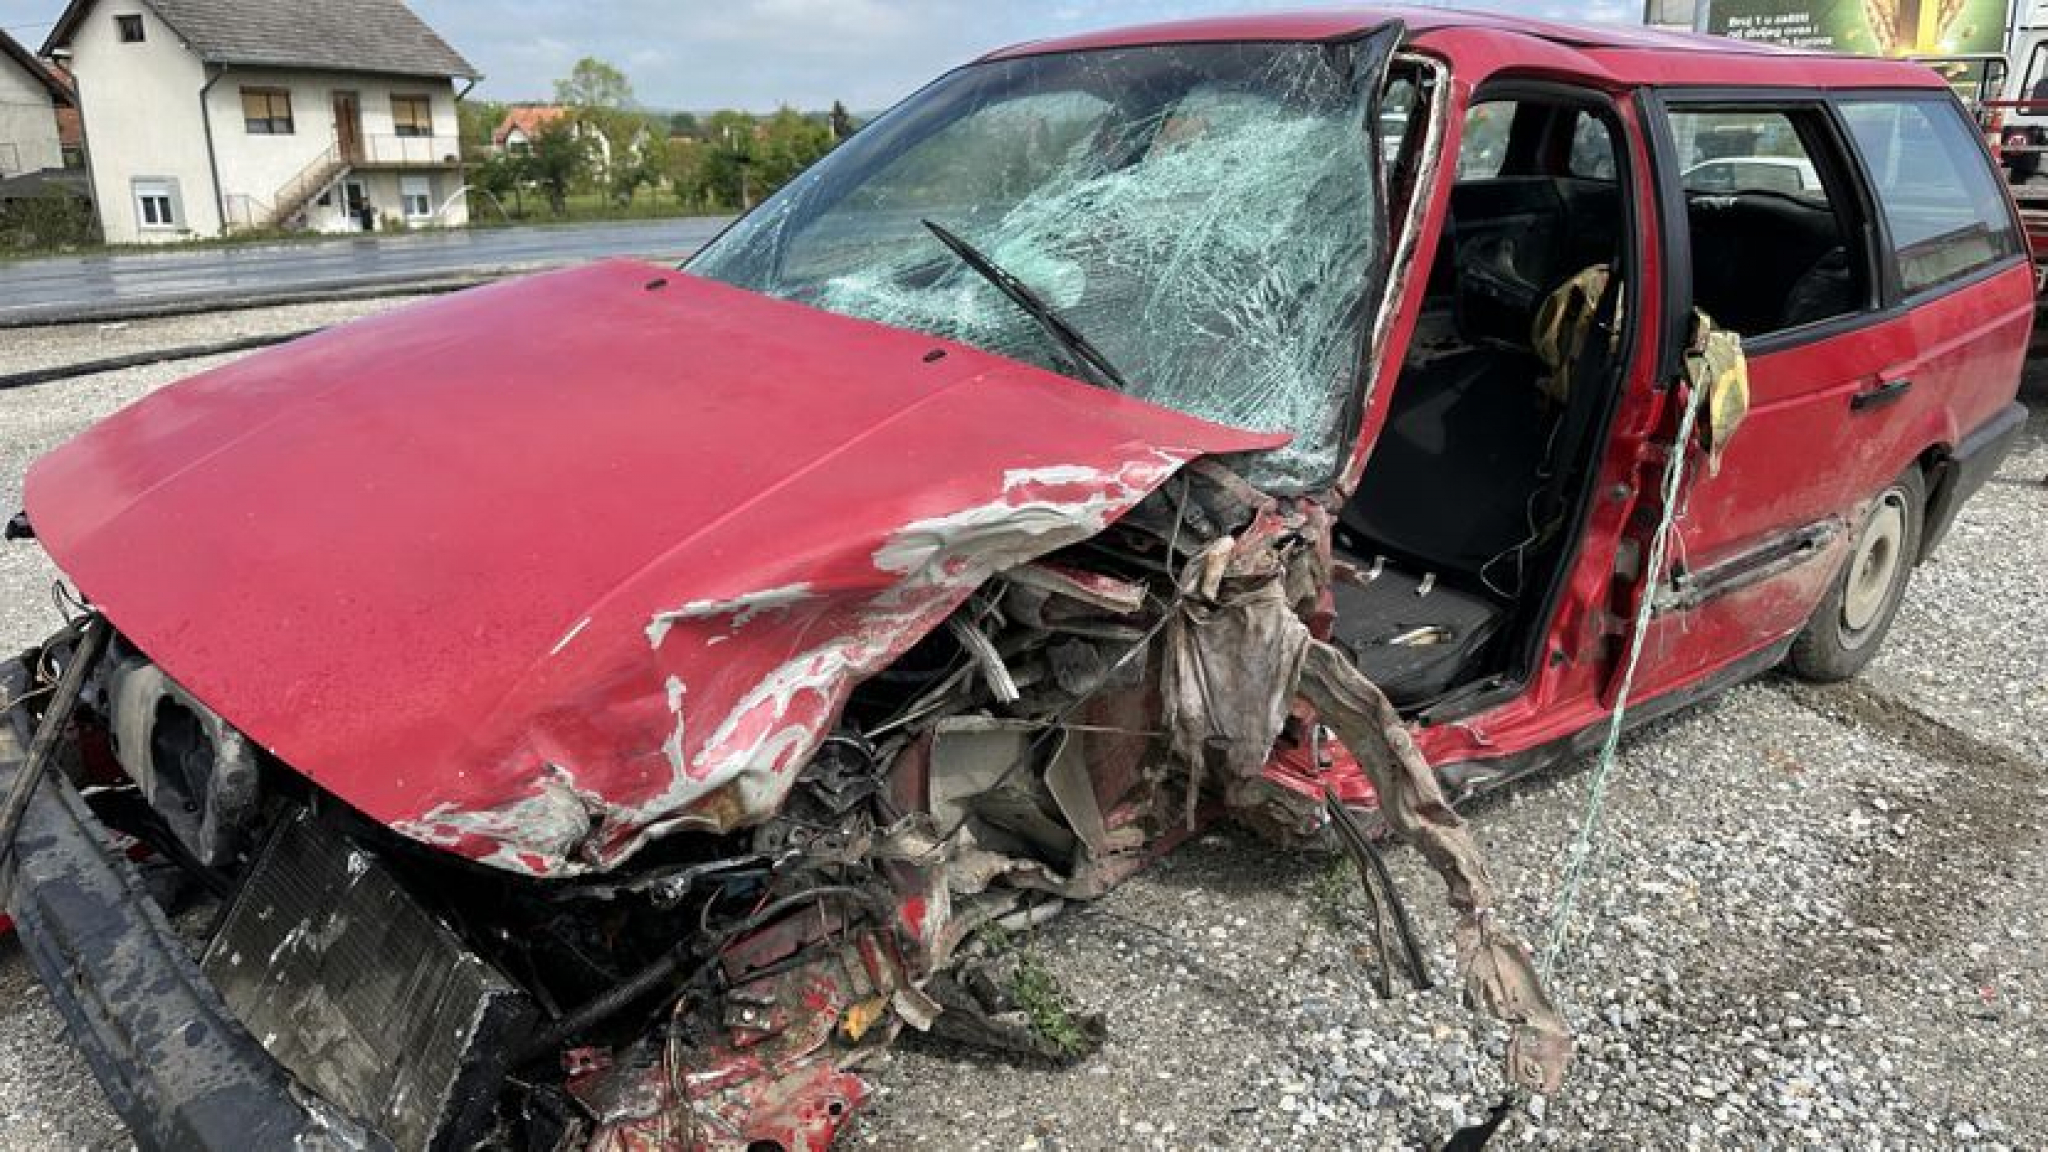 VATROGASCI SEKLI VOZILO I VADILI ČOVEKA Teška saobraćajna nesreća na Ibarskoj (FOTO)